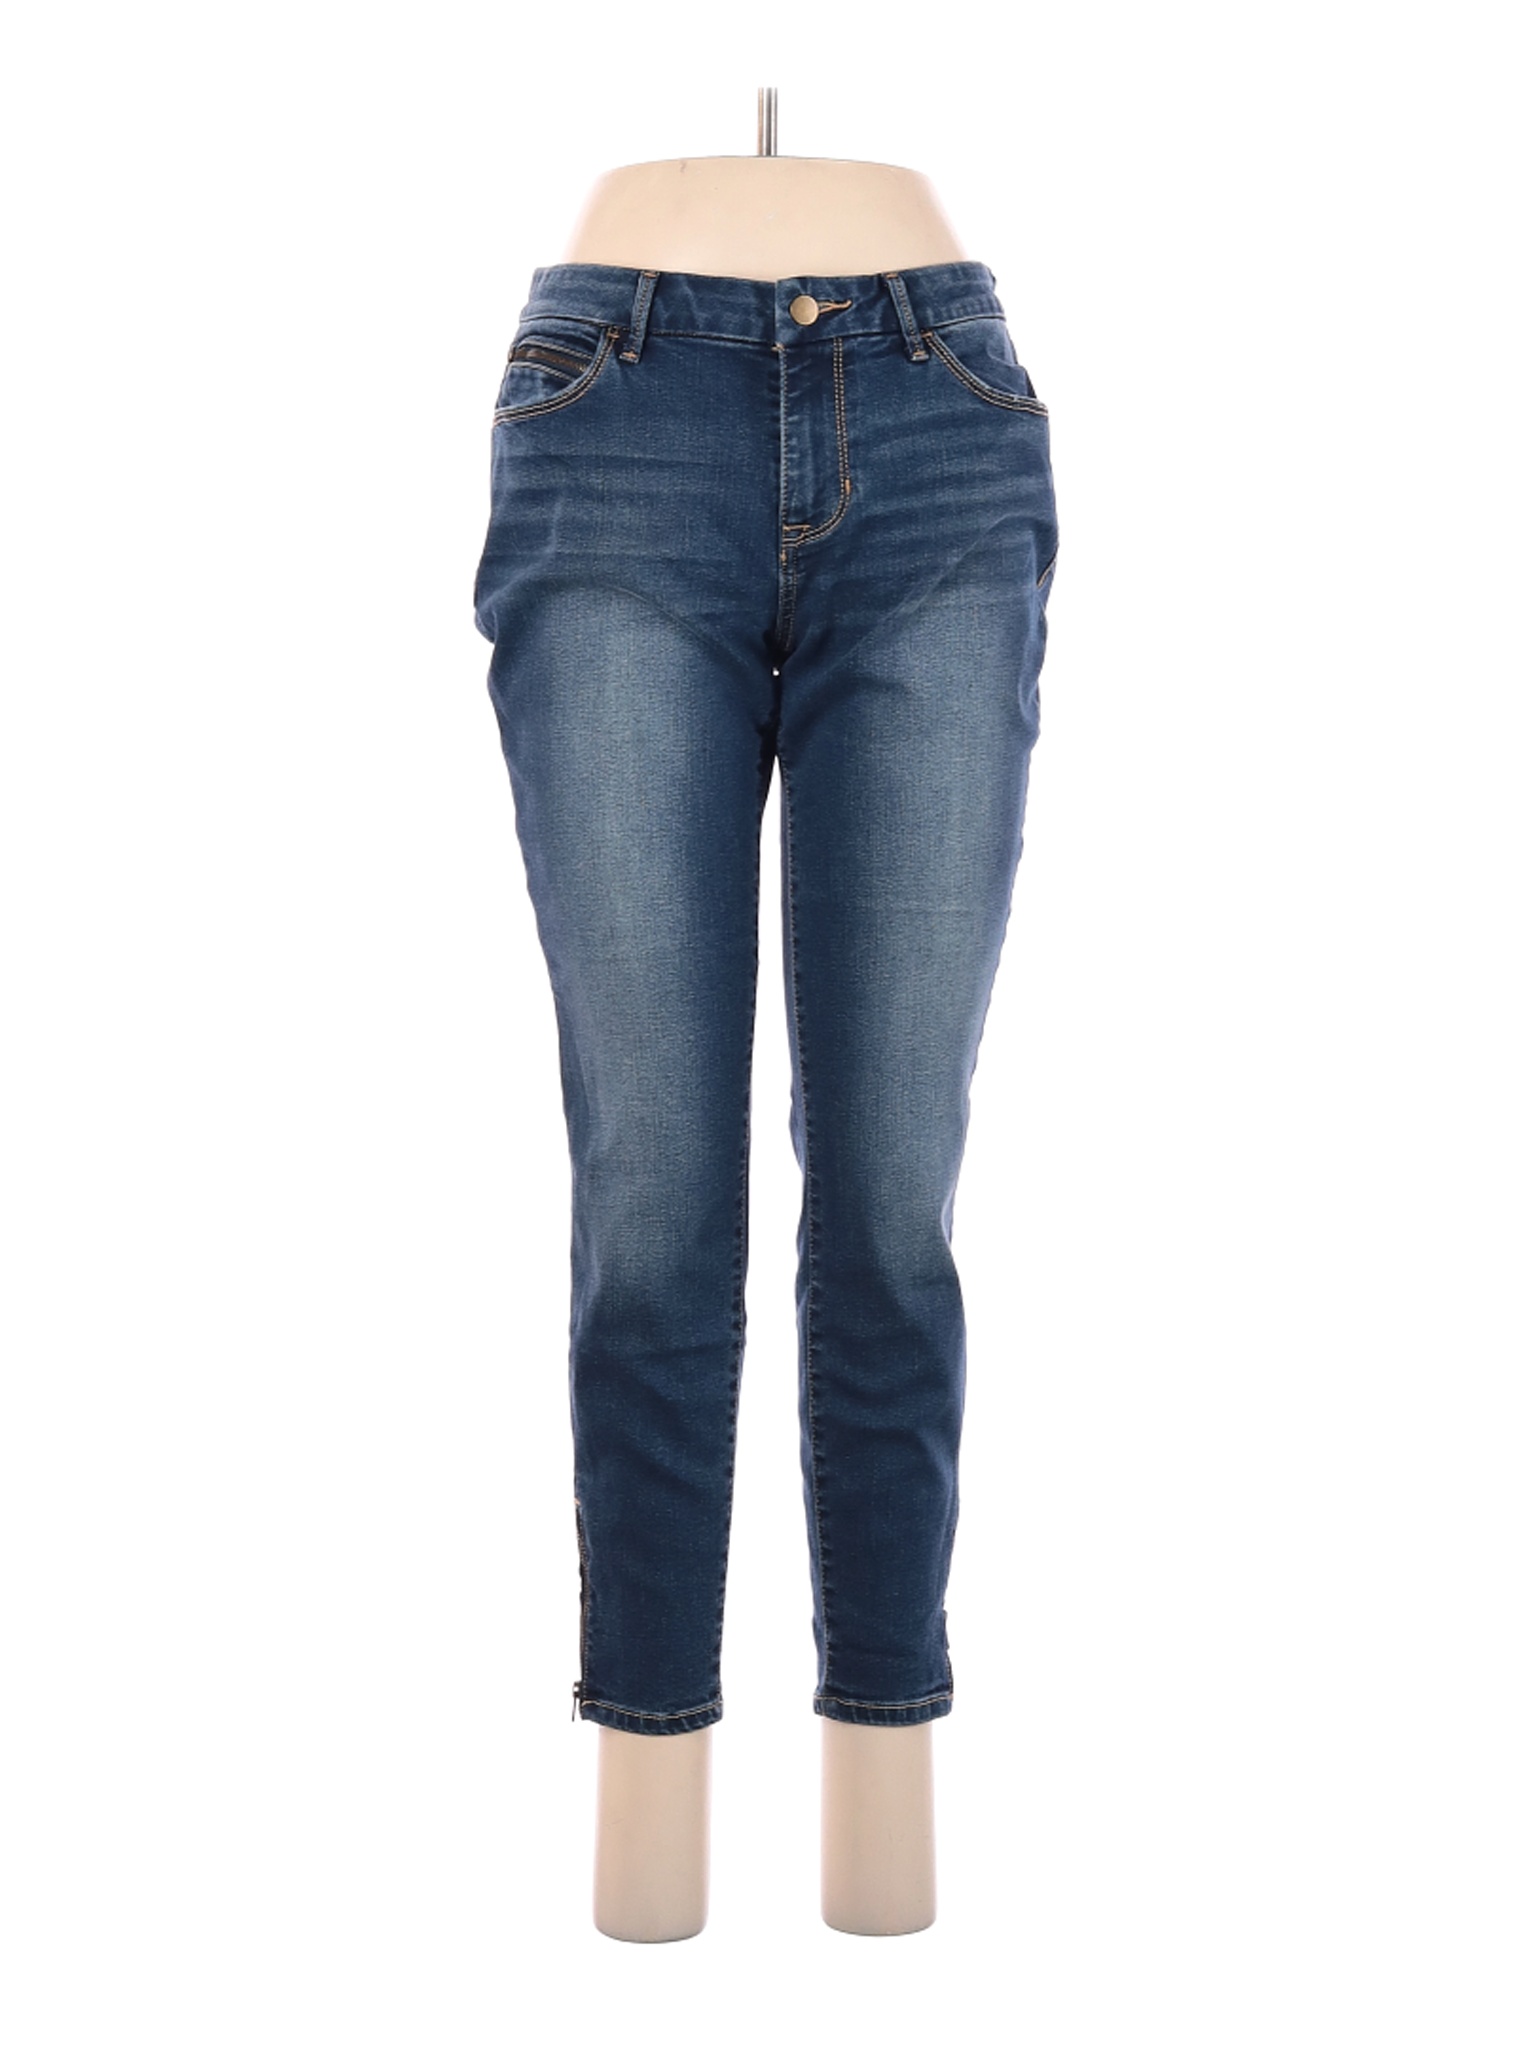 Apt. 9 Women Blue Jeans 10 | eBay